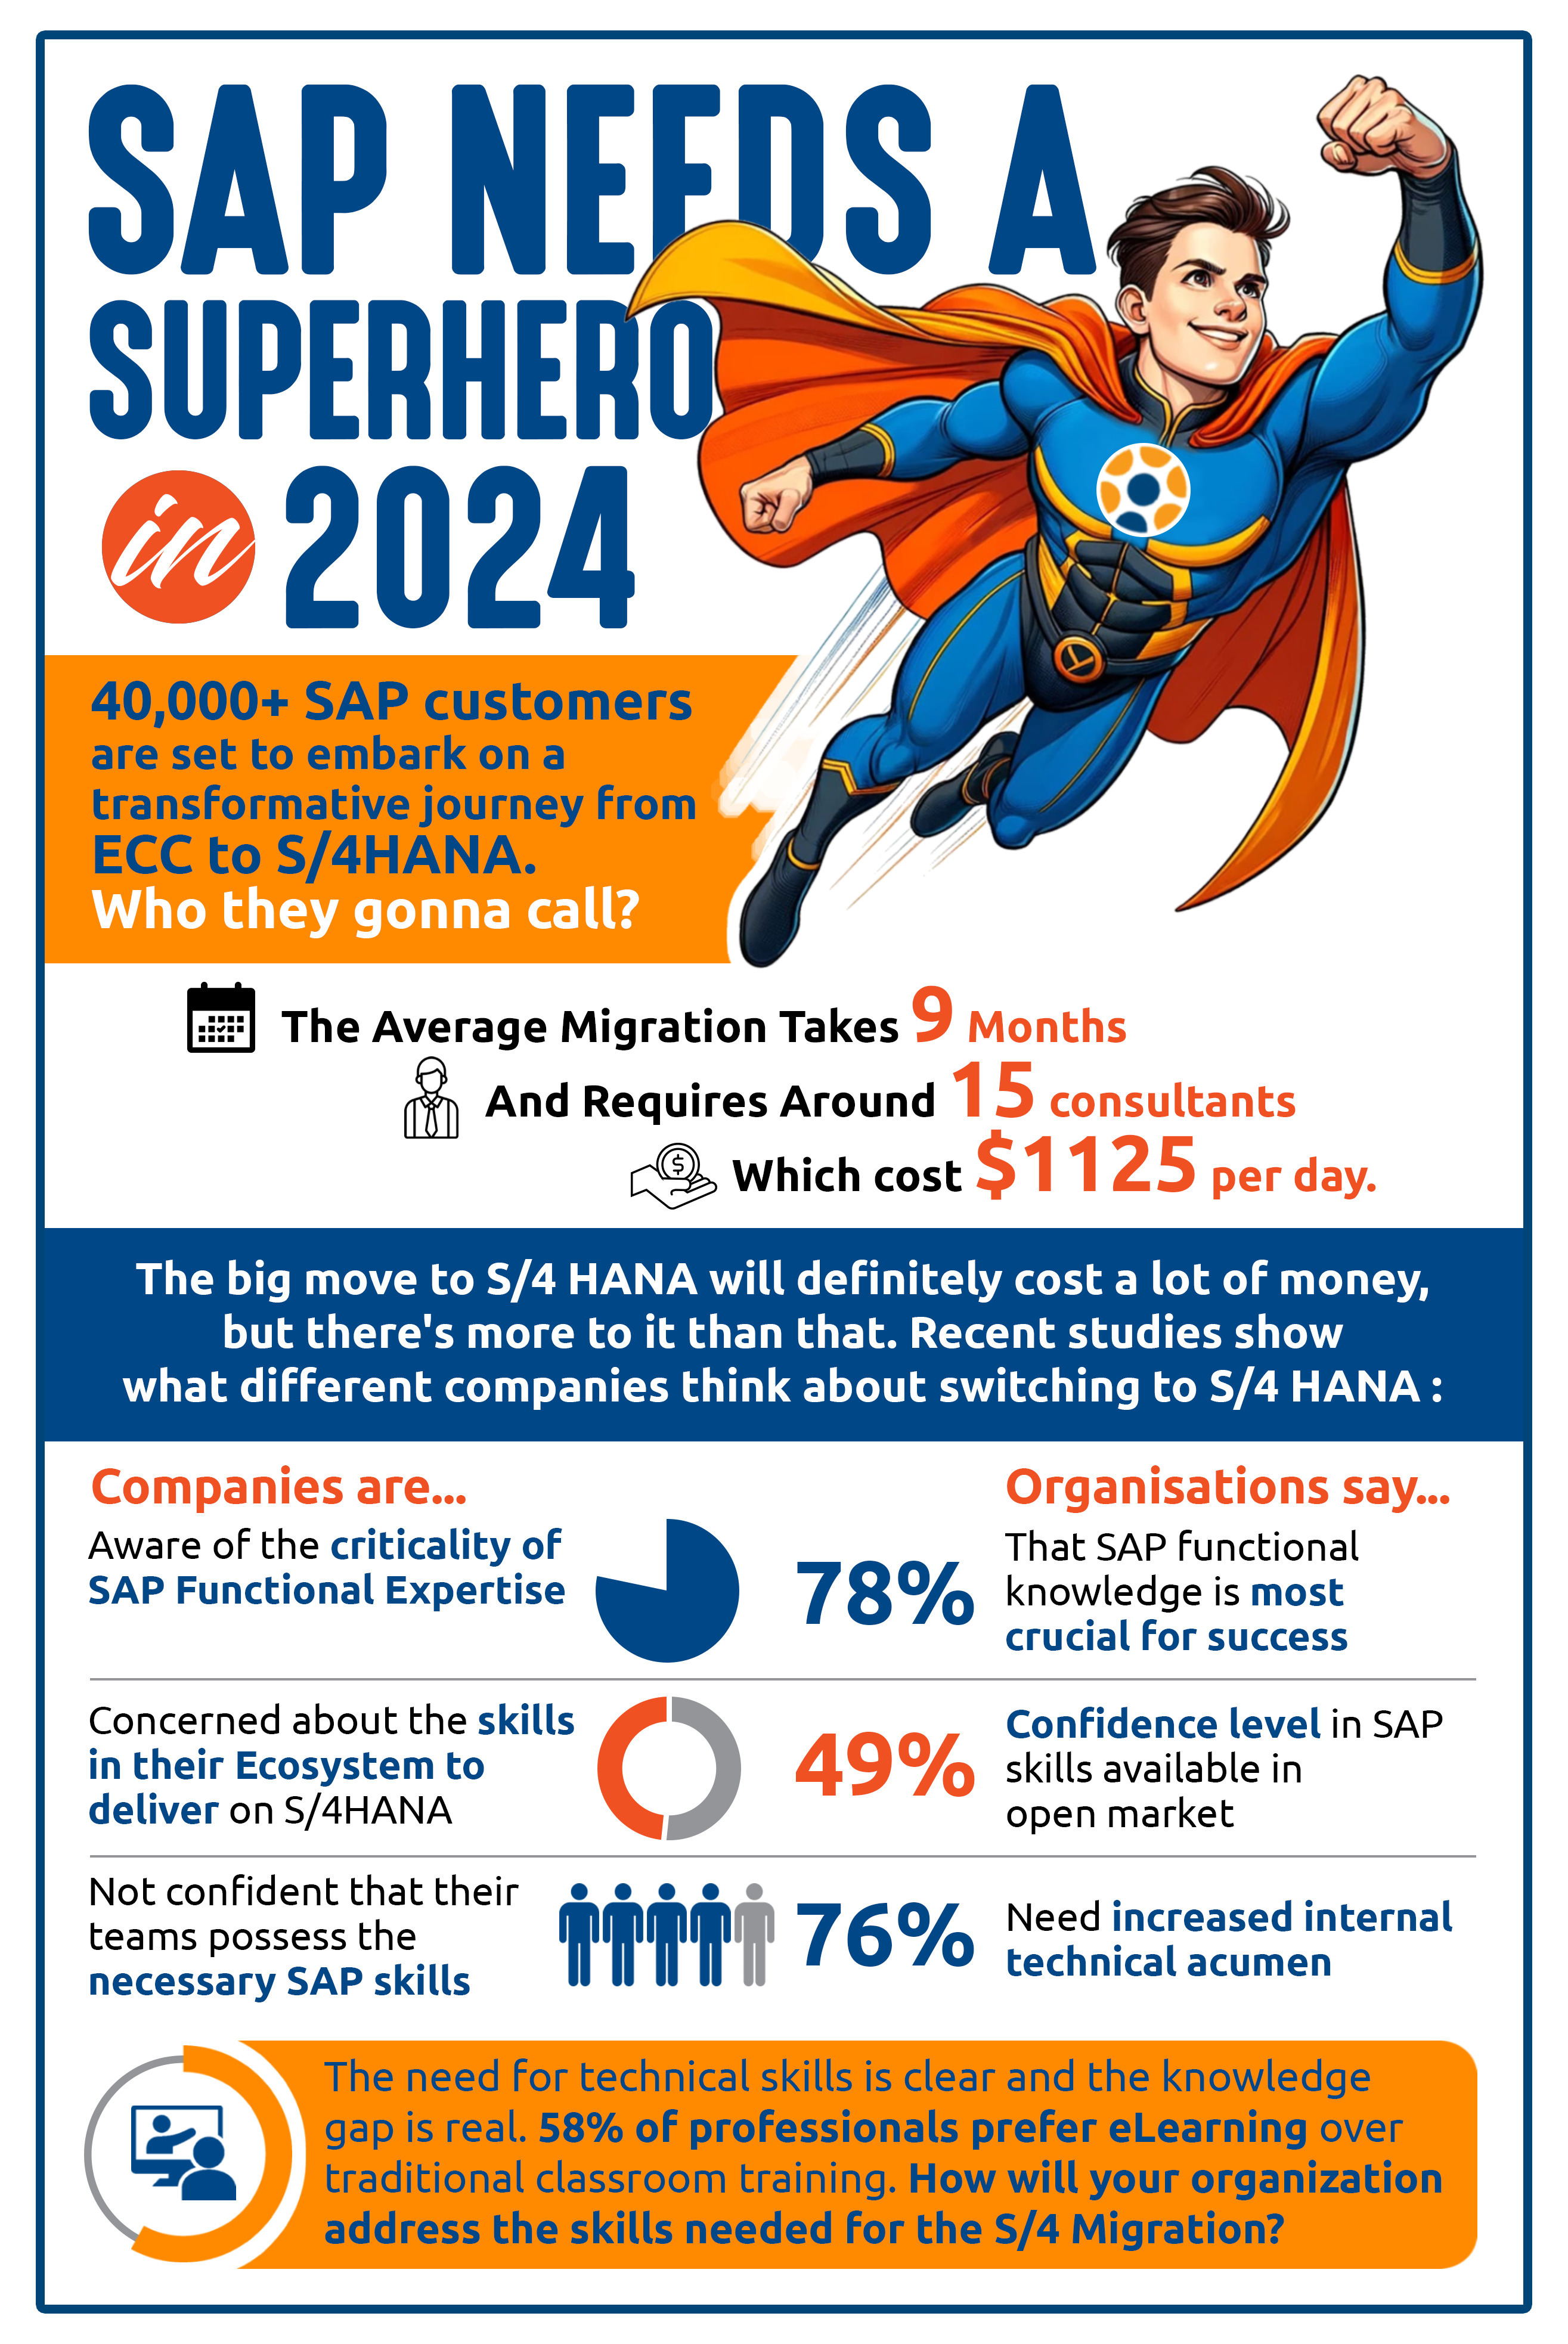 < SAP Needs a Superhero in 2024!